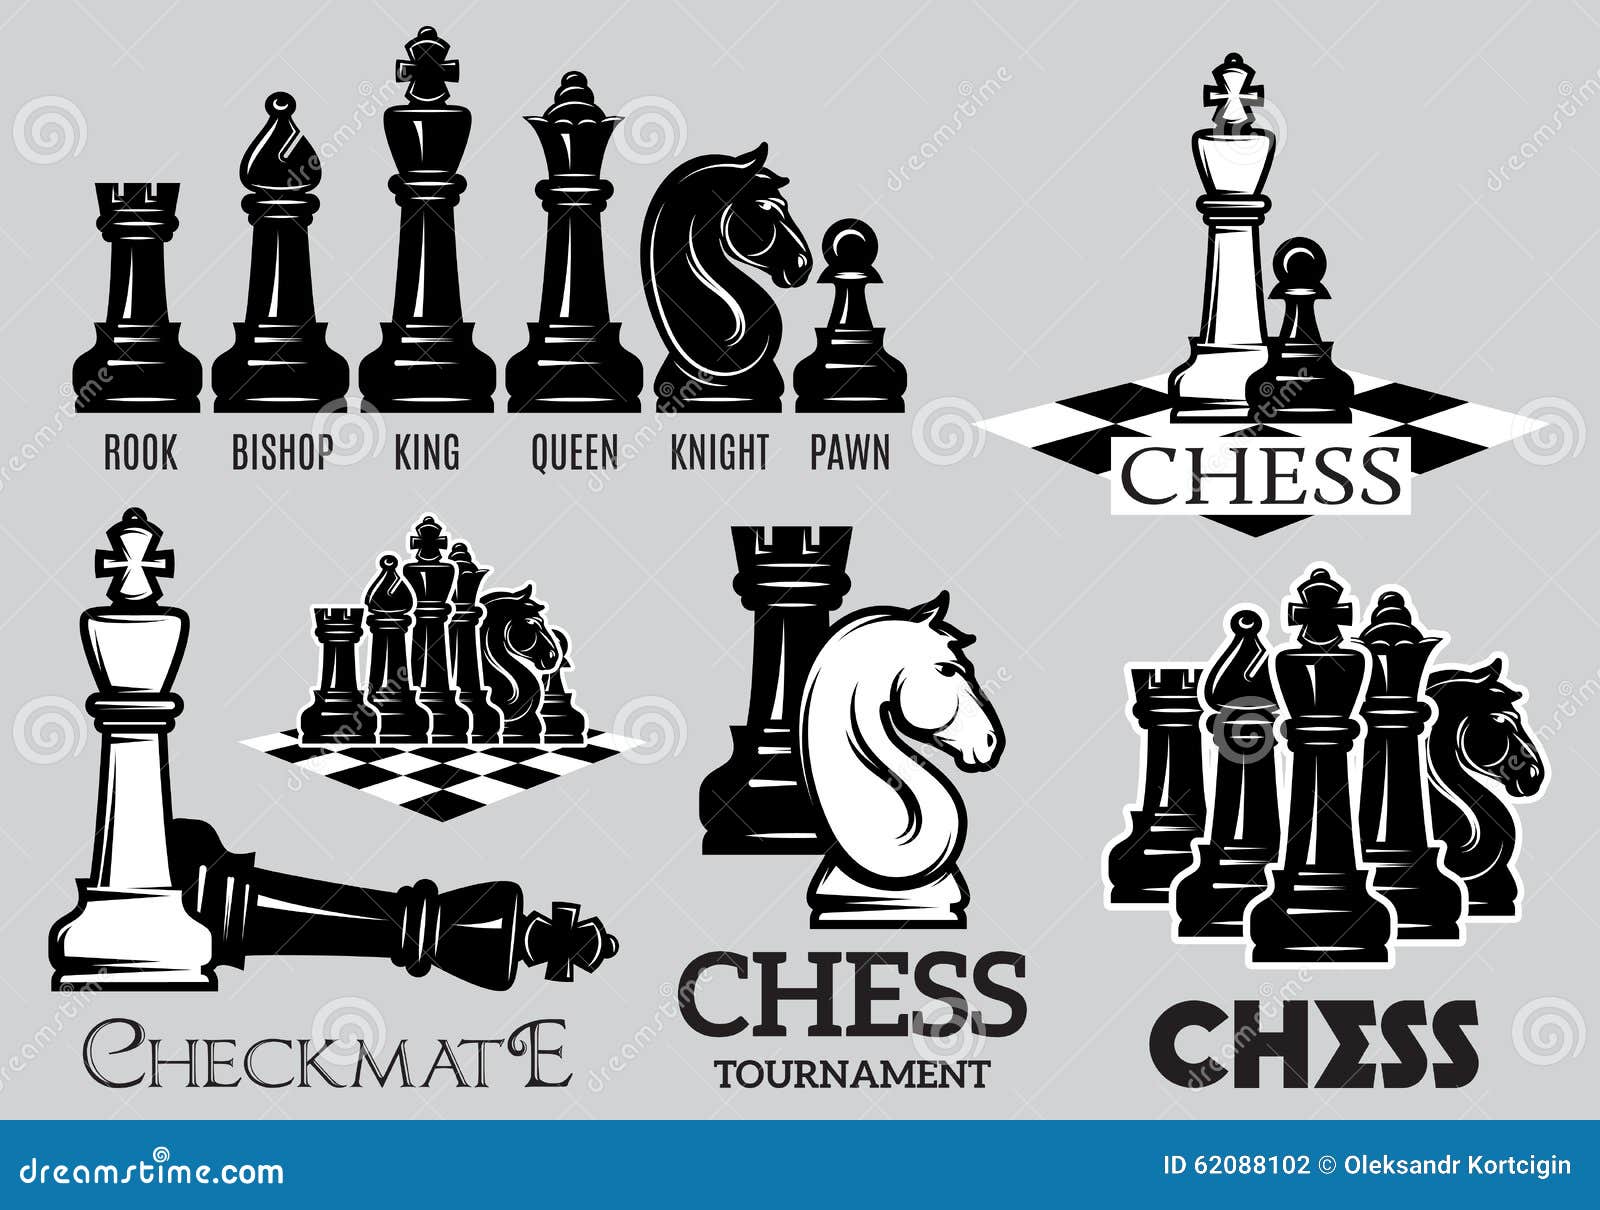 Página 68  Chess Tournament Imagens – Download Grátis no Freepik